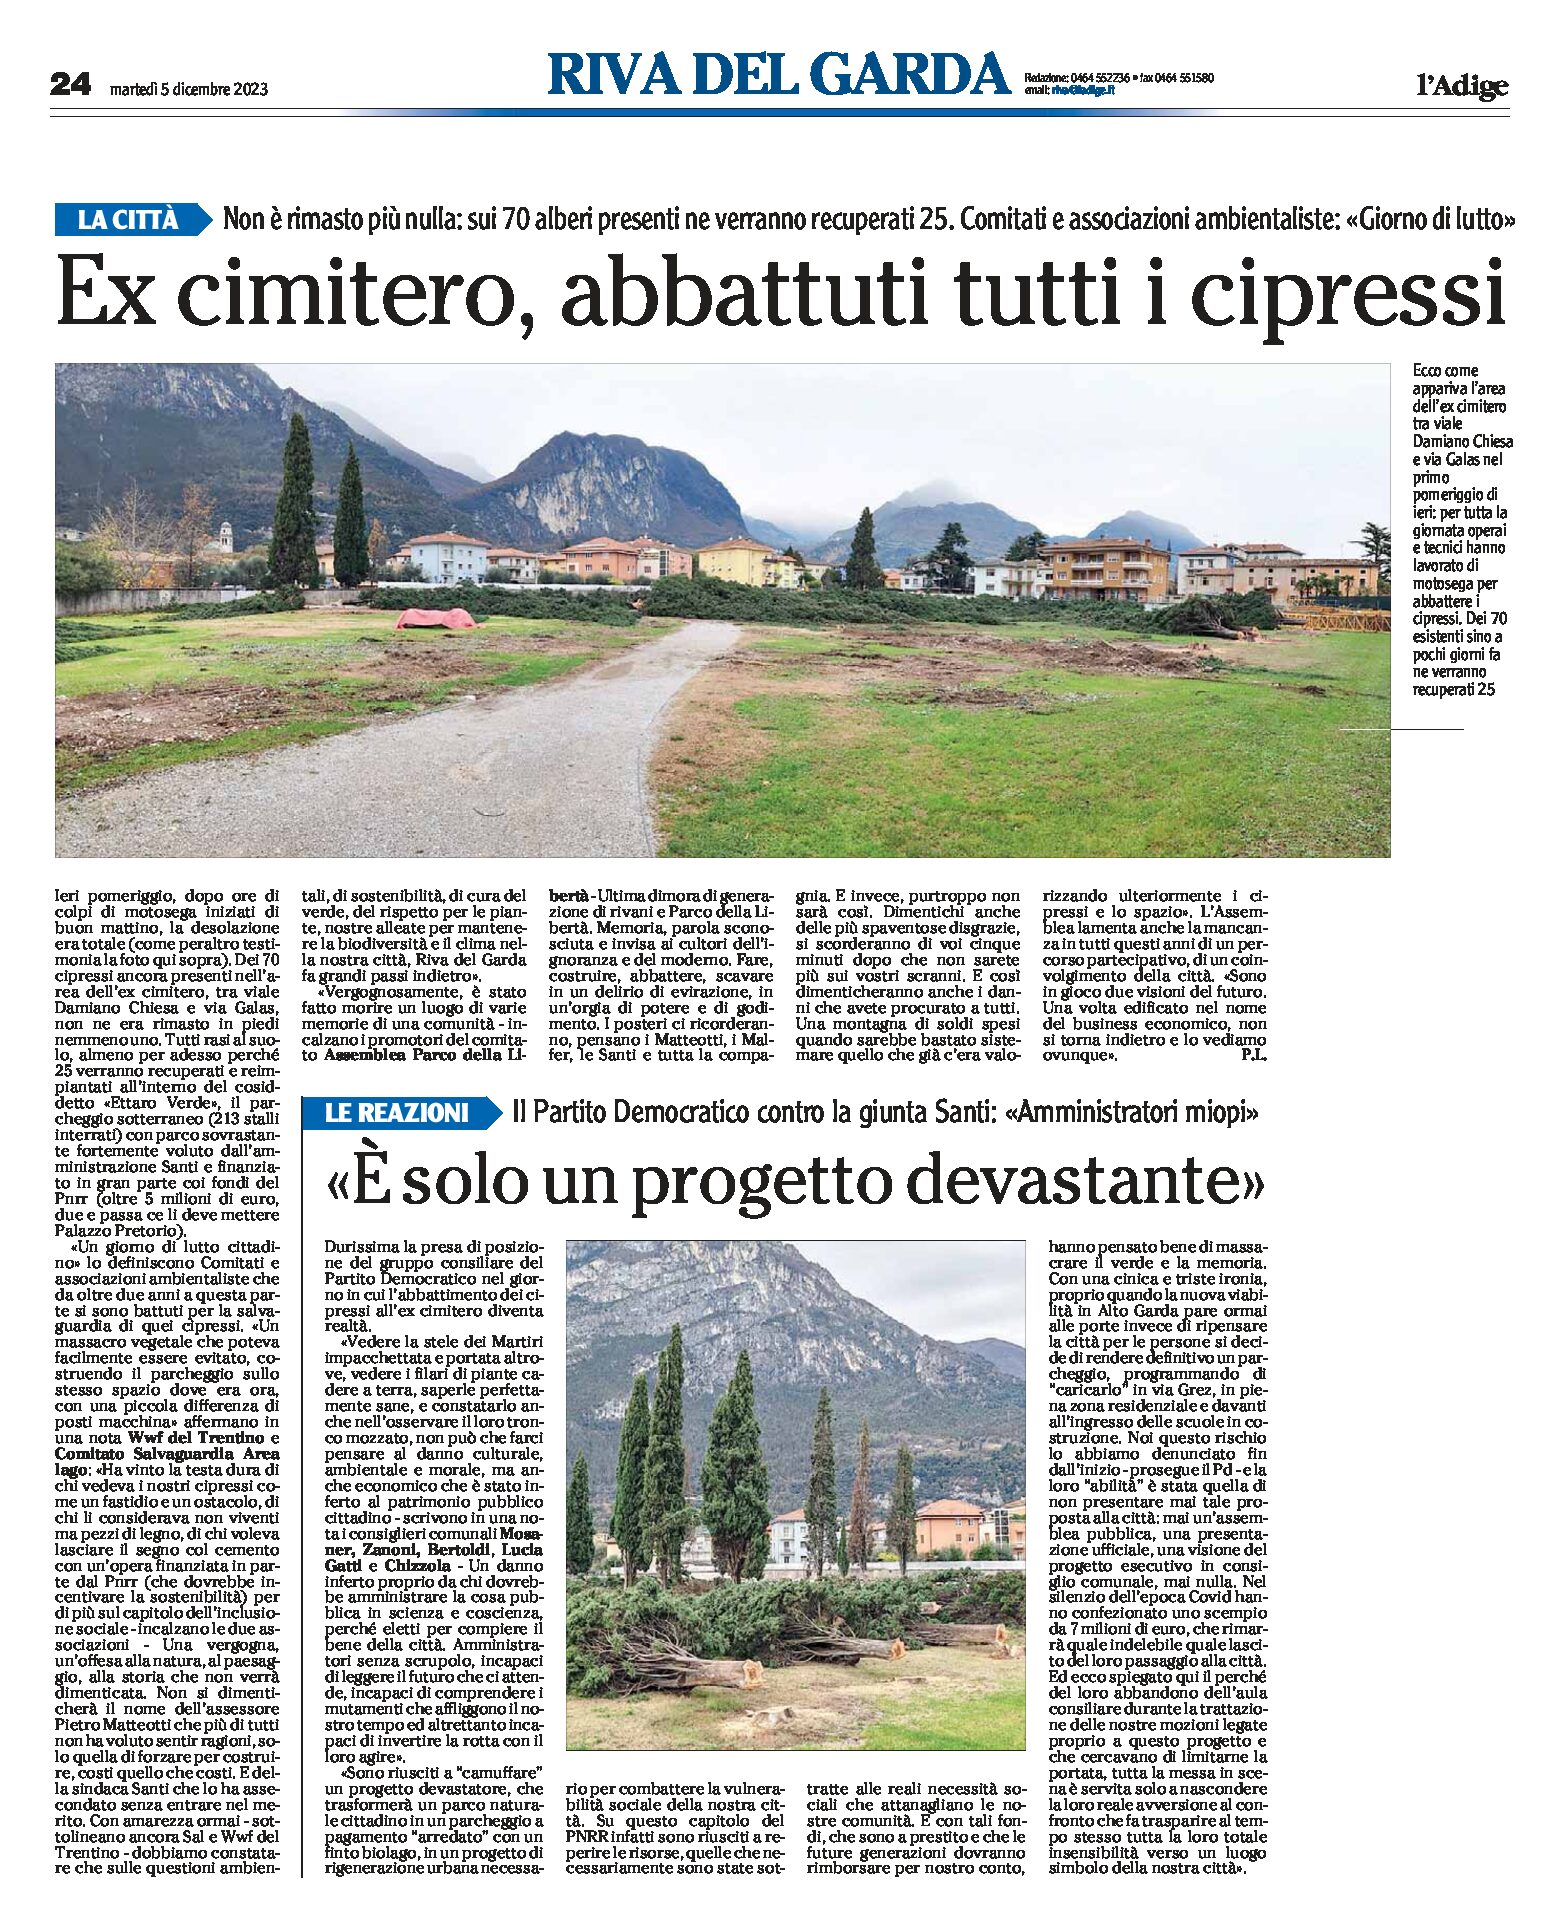 Riva, ex cimitero: abbattuti tutti i cipressi, progetto devastante